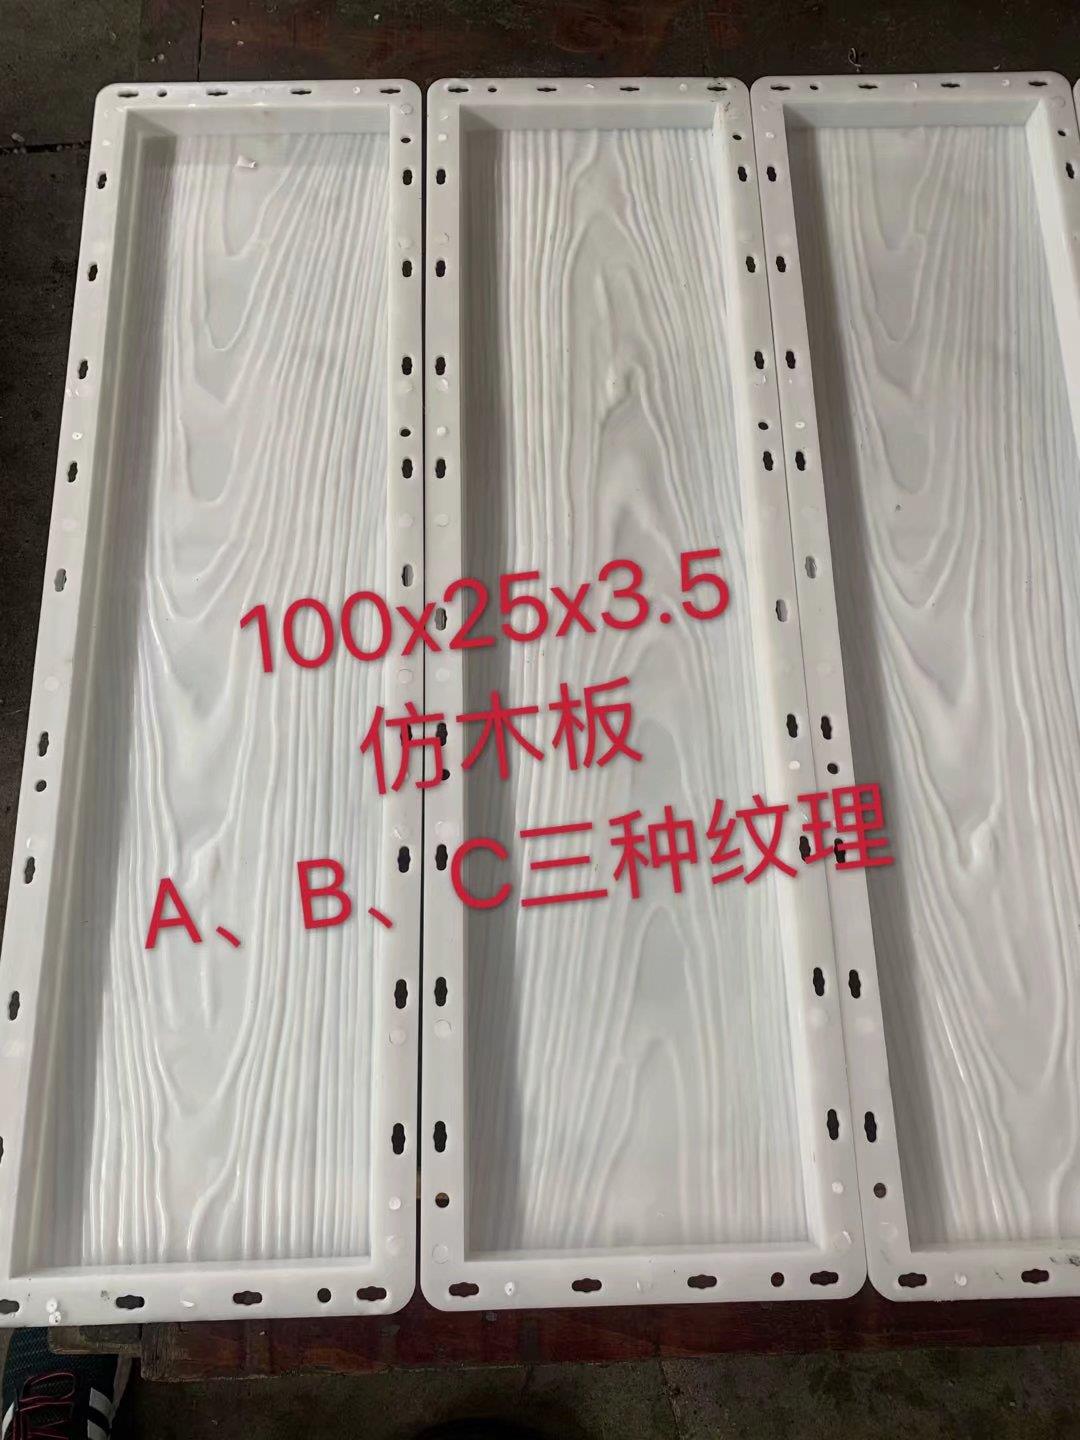 仿木铺板模具2米长15公分宽6公分厚塑料栈道板模具